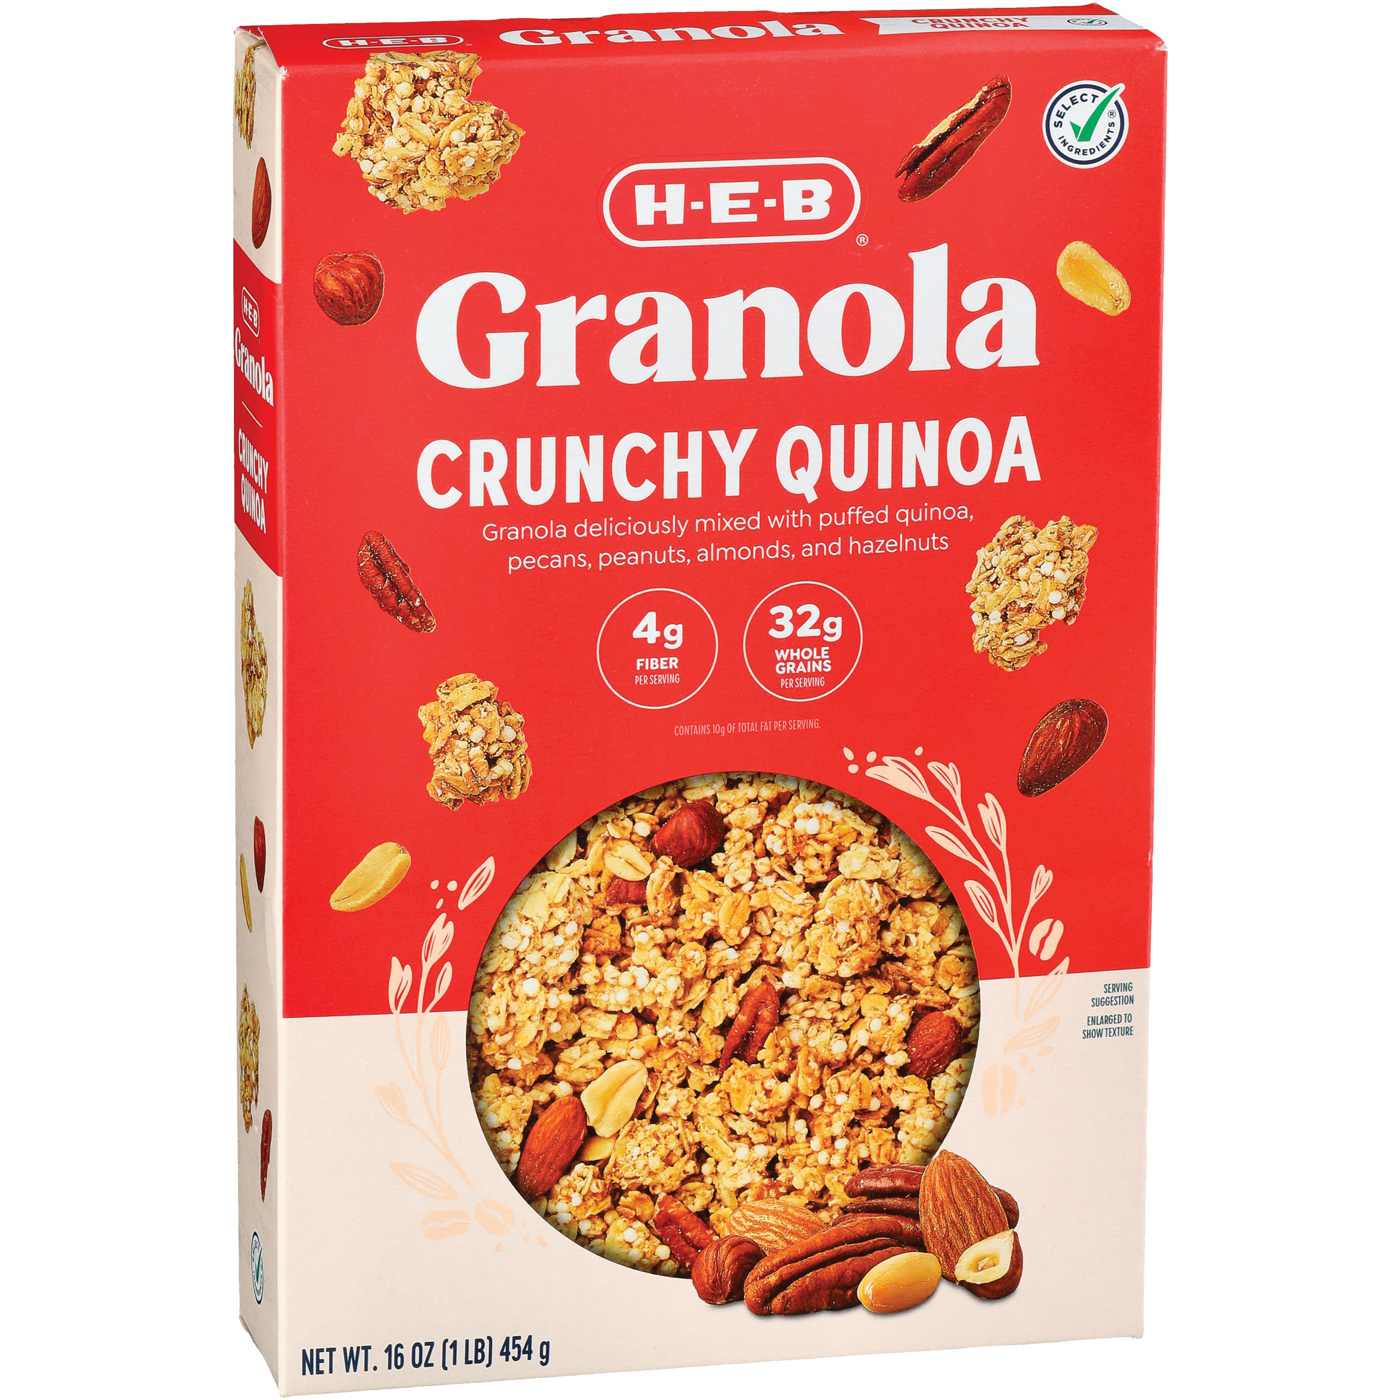 H-E-B Crunchy Quinoa Granola; image 2 of 2